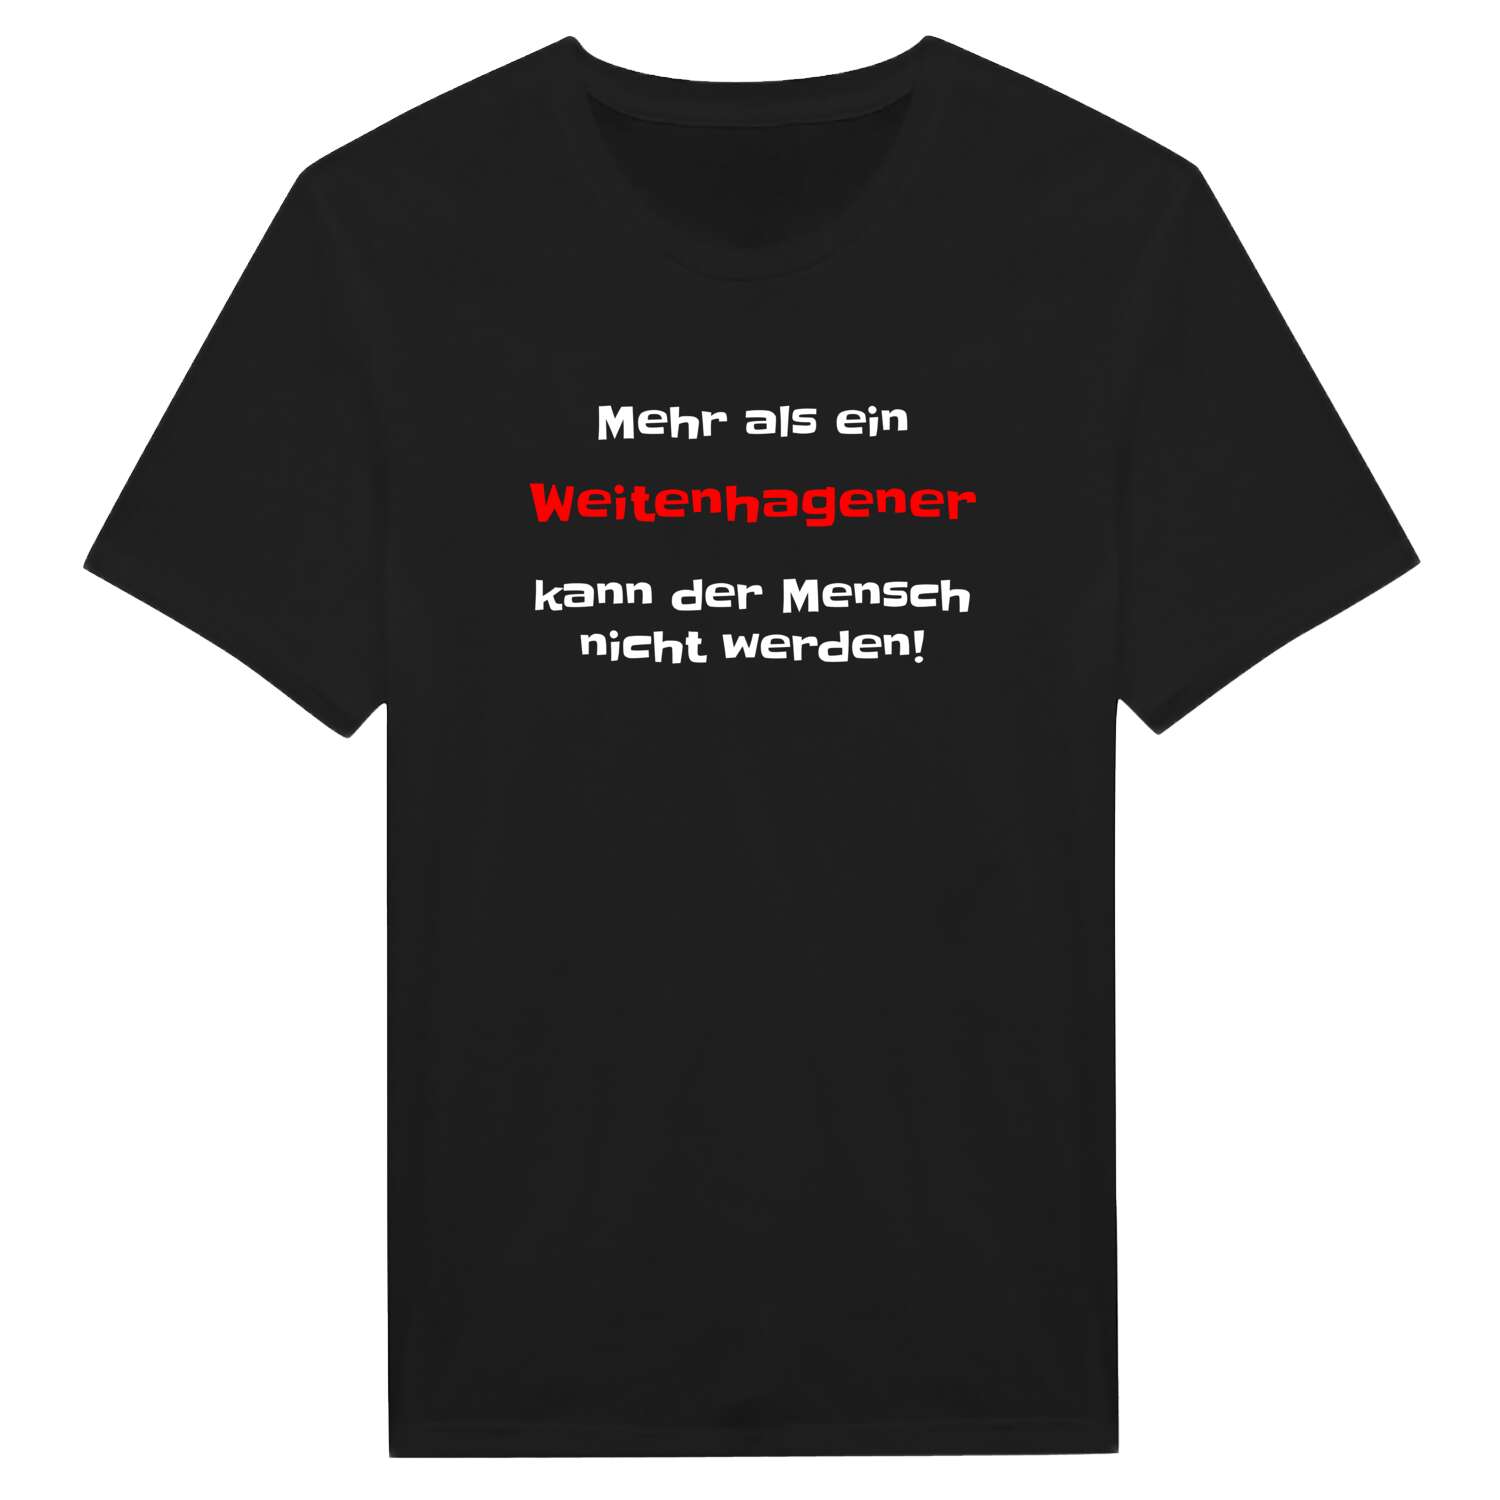 Weitenhagen T-Shirt »Mehr als ein«